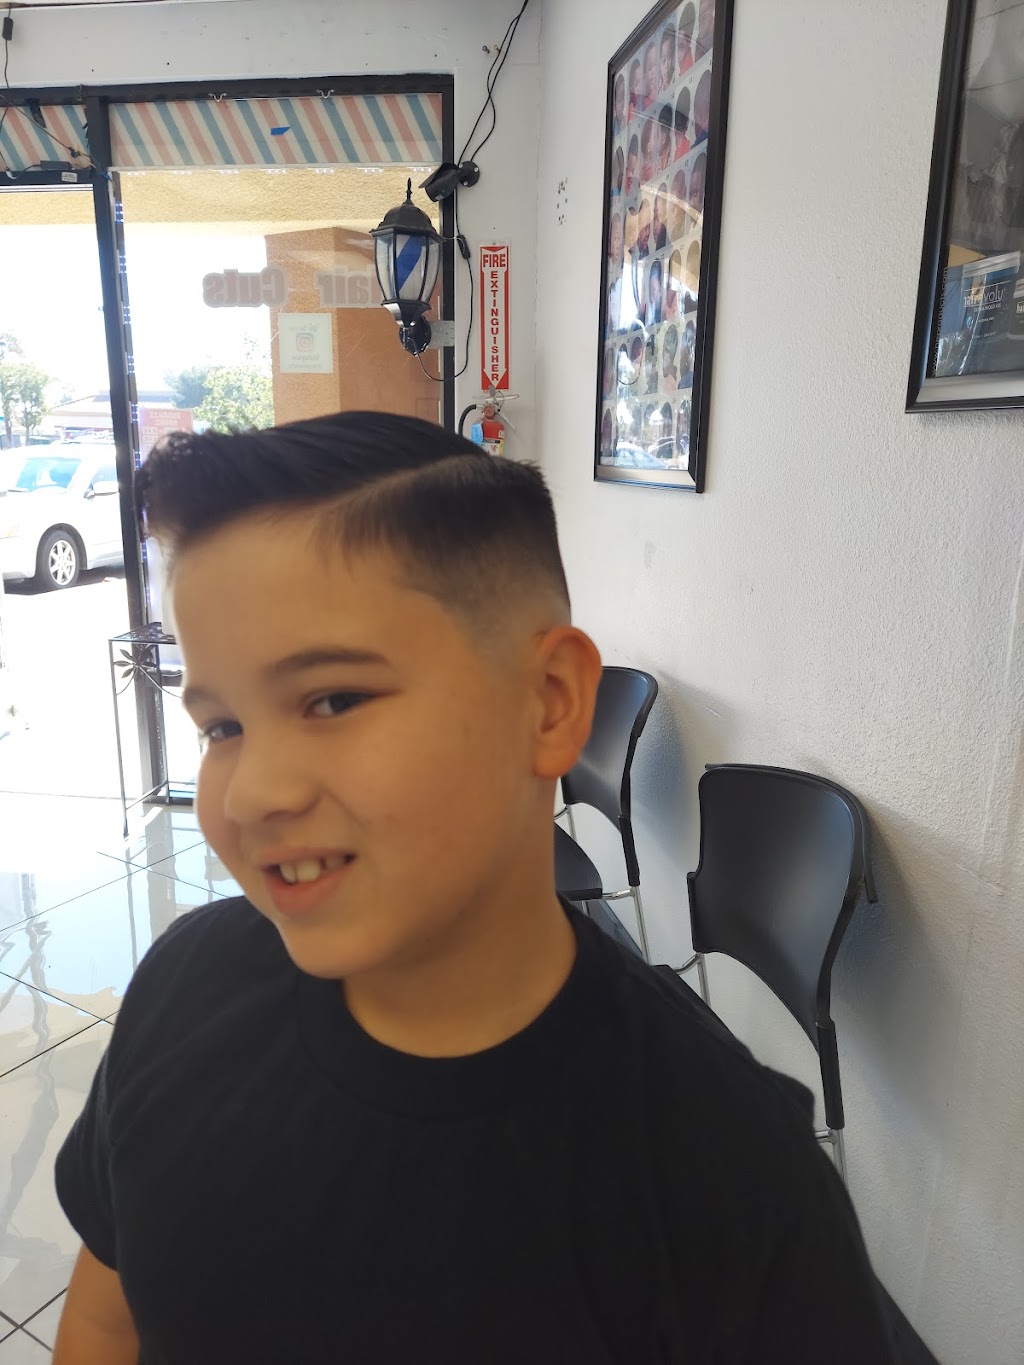 Angels Haircuts | 1374 Foothill Blvd, Rialto, CA 92376, USA | Phone: (909) 874-4694